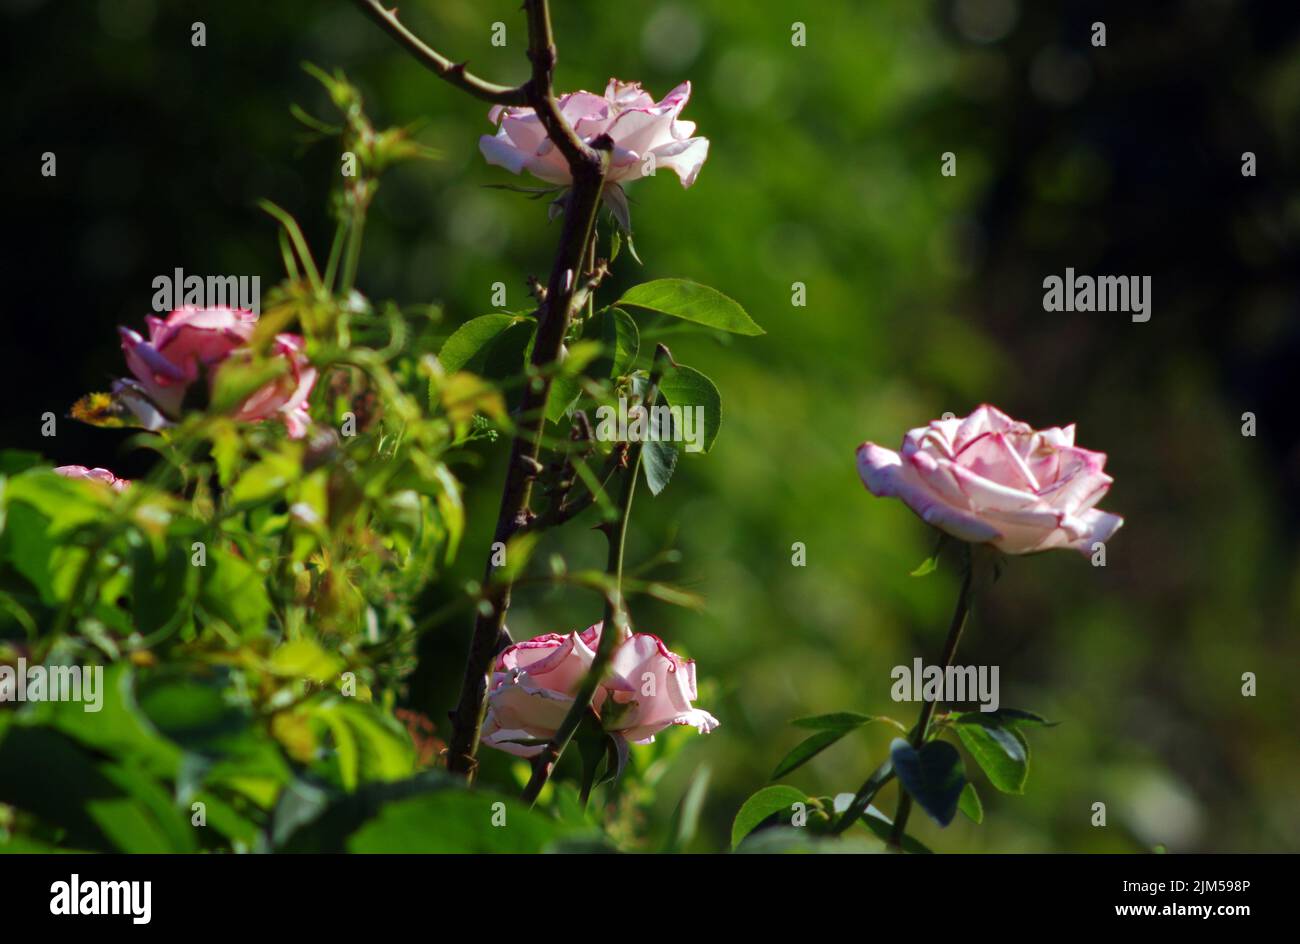 Pink rose close-up Stock Photo